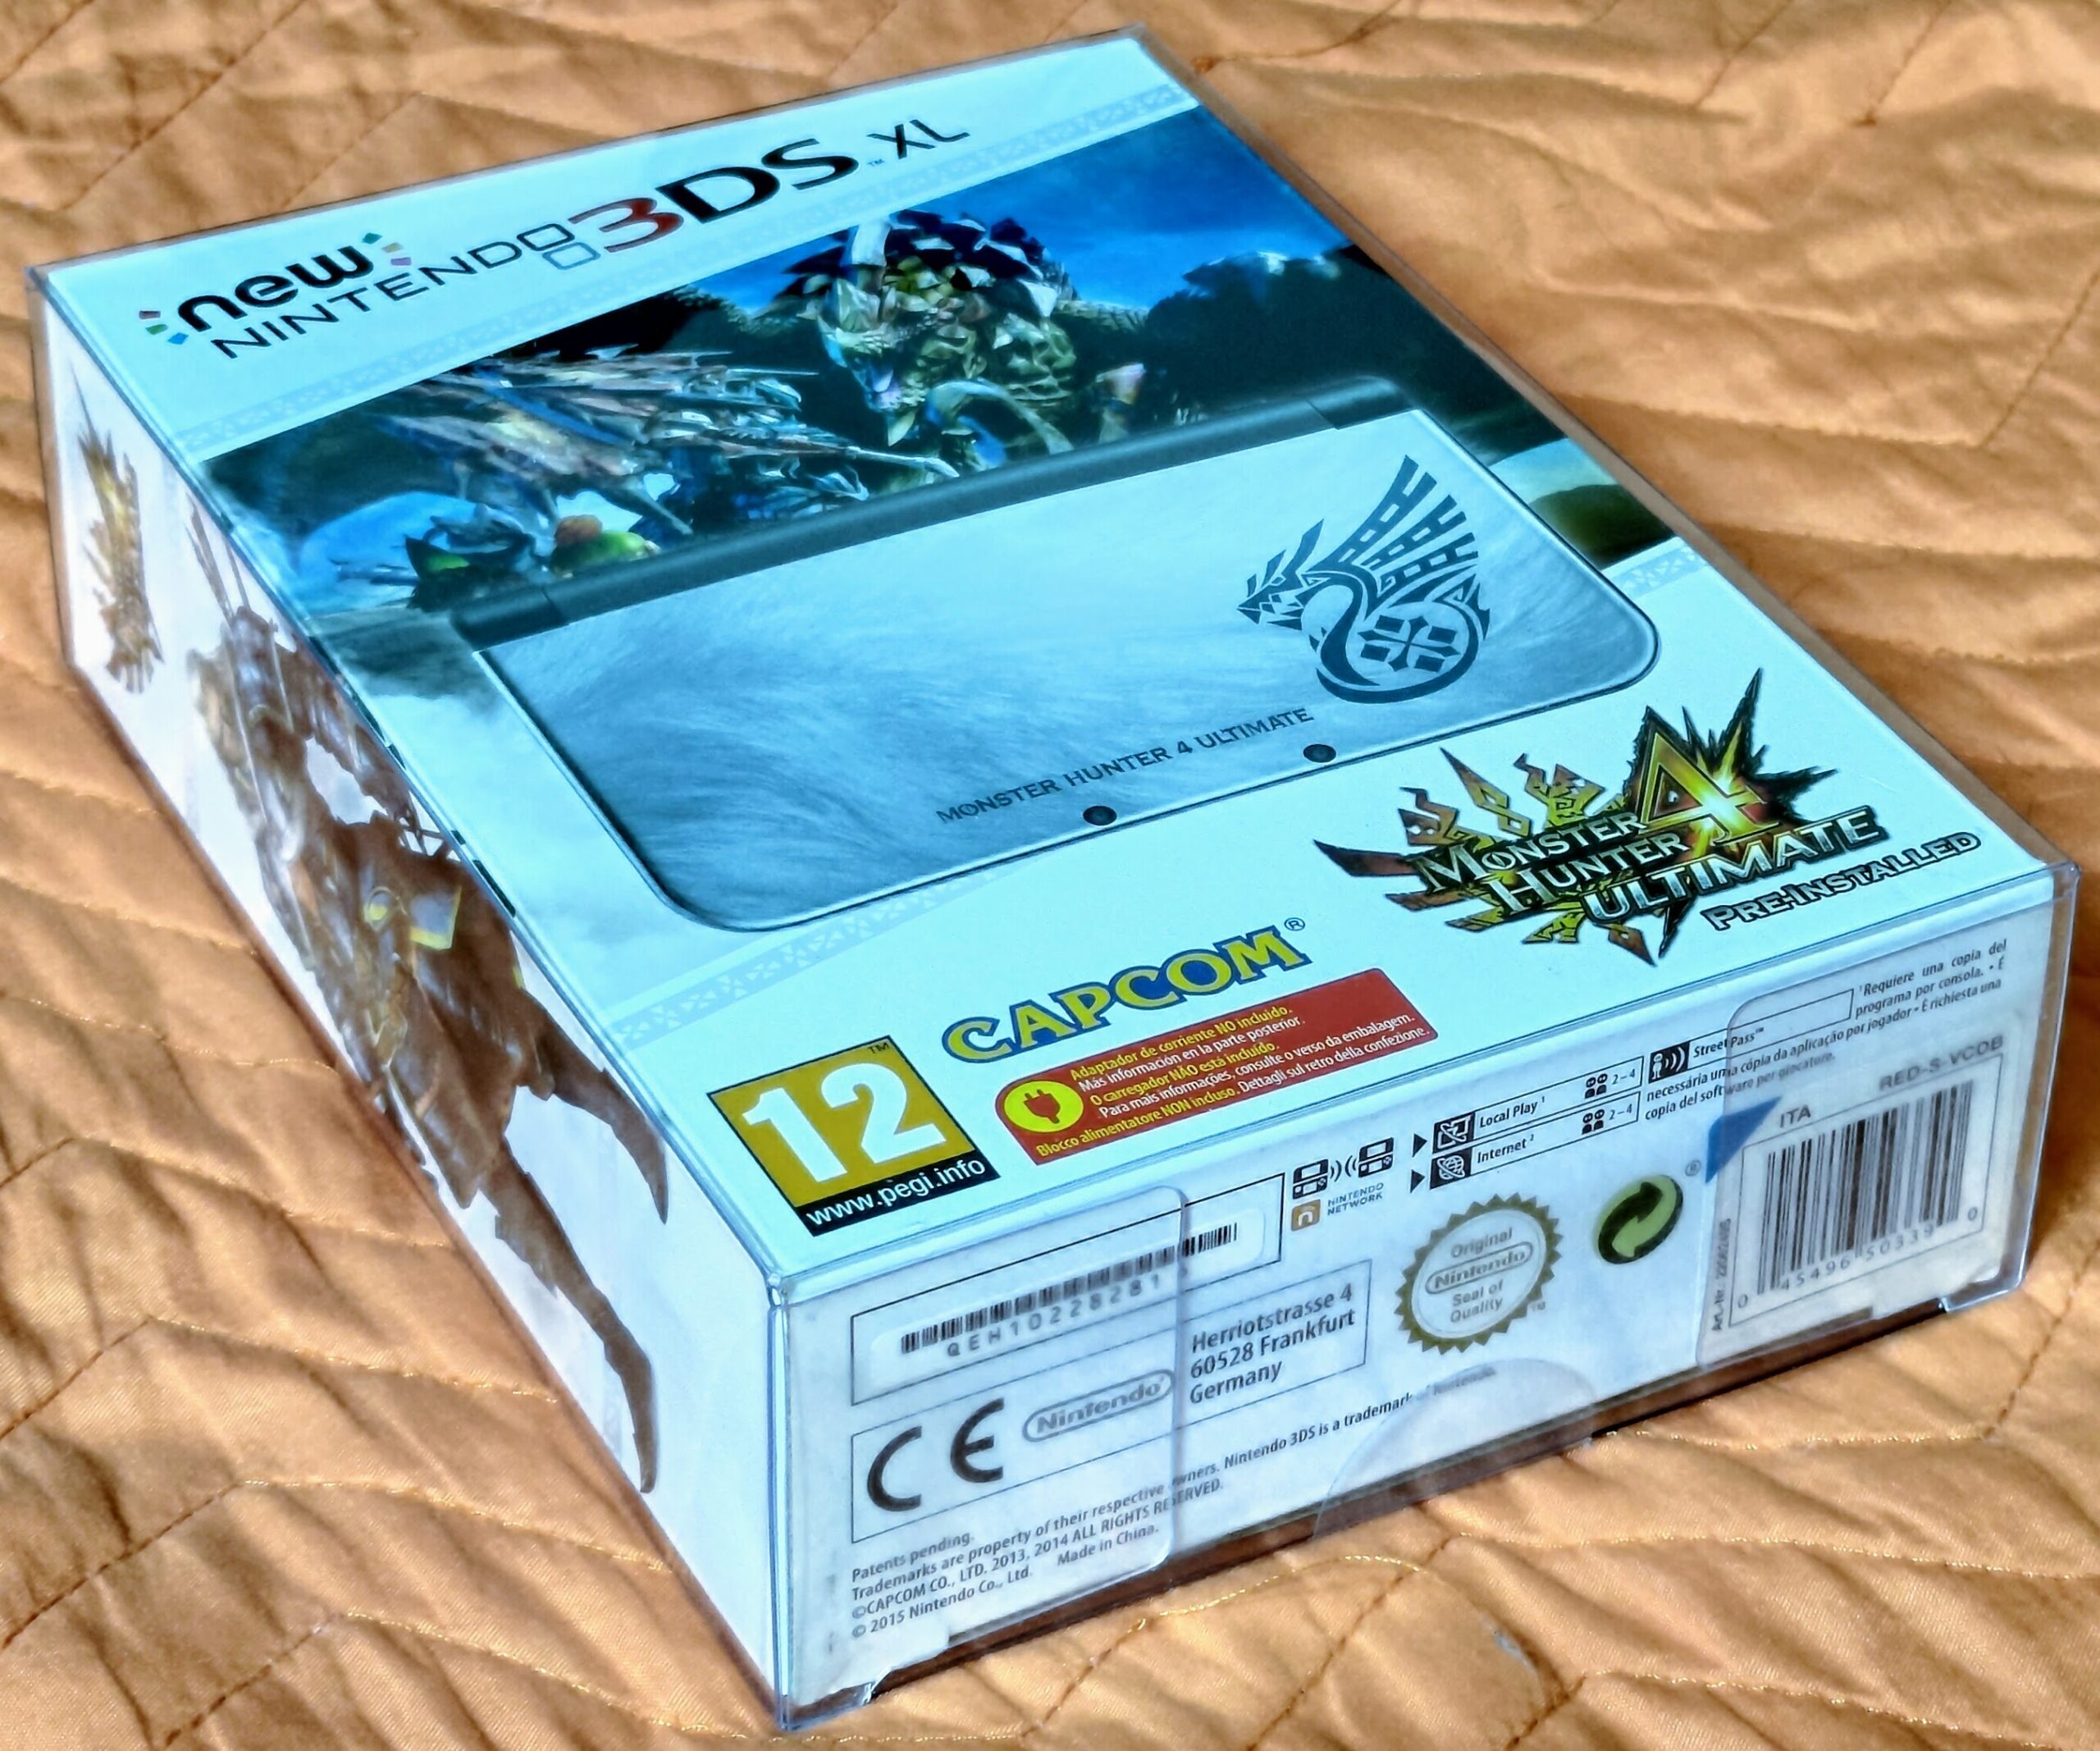 New Nintendo 3DS XL "Monster Hunter 4 Ultimate Edition", presentazione della console